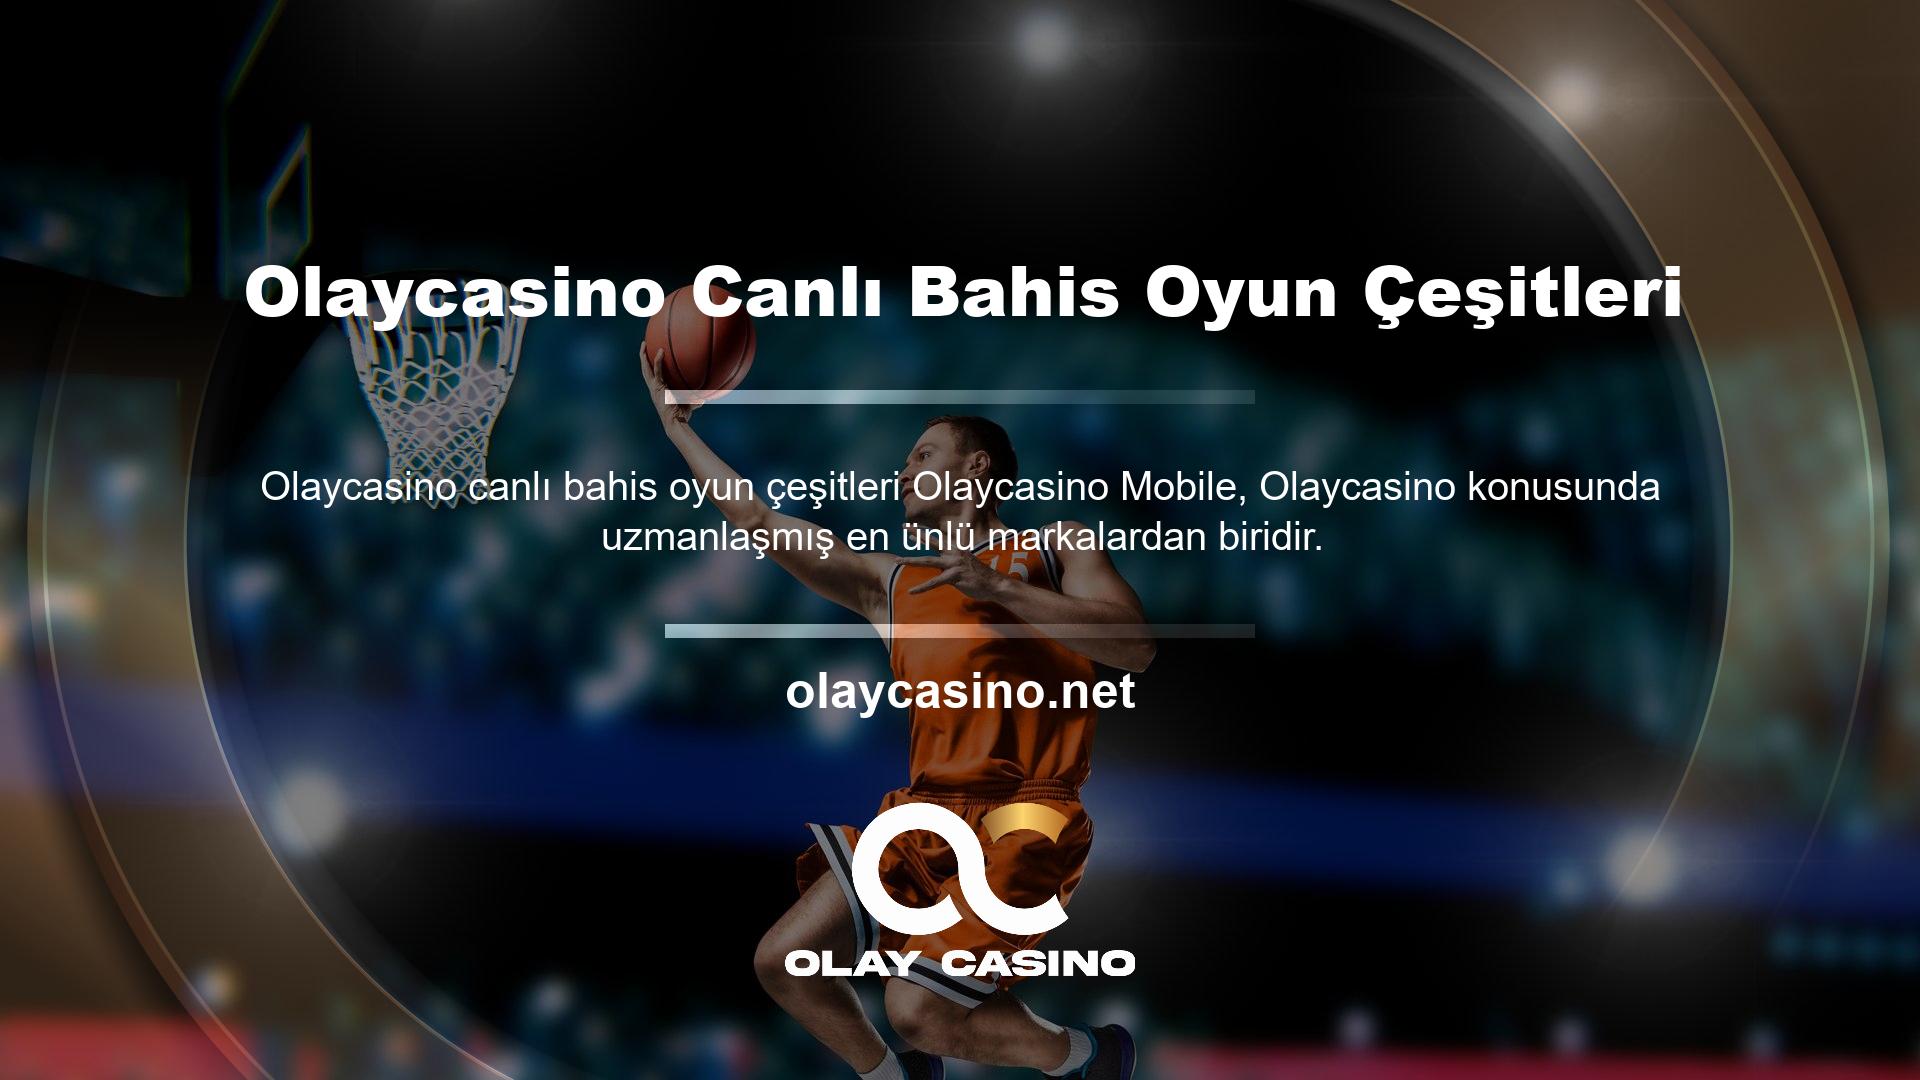 Bahis sitesi Olaycasino, casino içeriklerini adil oyun anlayışı ve takdiriyle desteklemekte ve bahis konularına olan duyarlılığıyla kullanıcılar arasında itibar kazanmaktadır